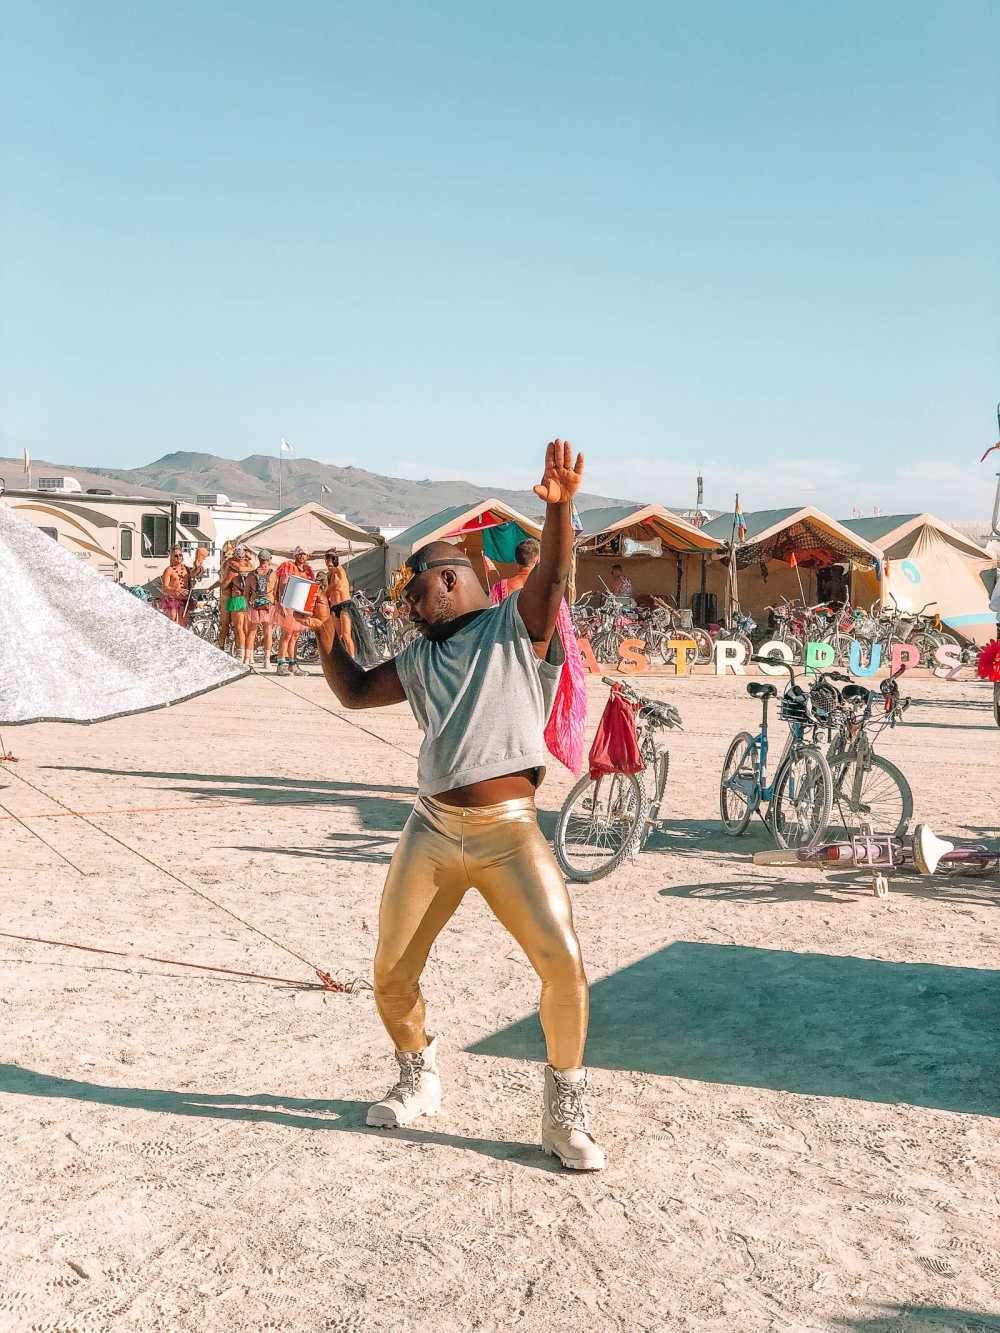  Руководство для начинающих по Burning Man (5) 